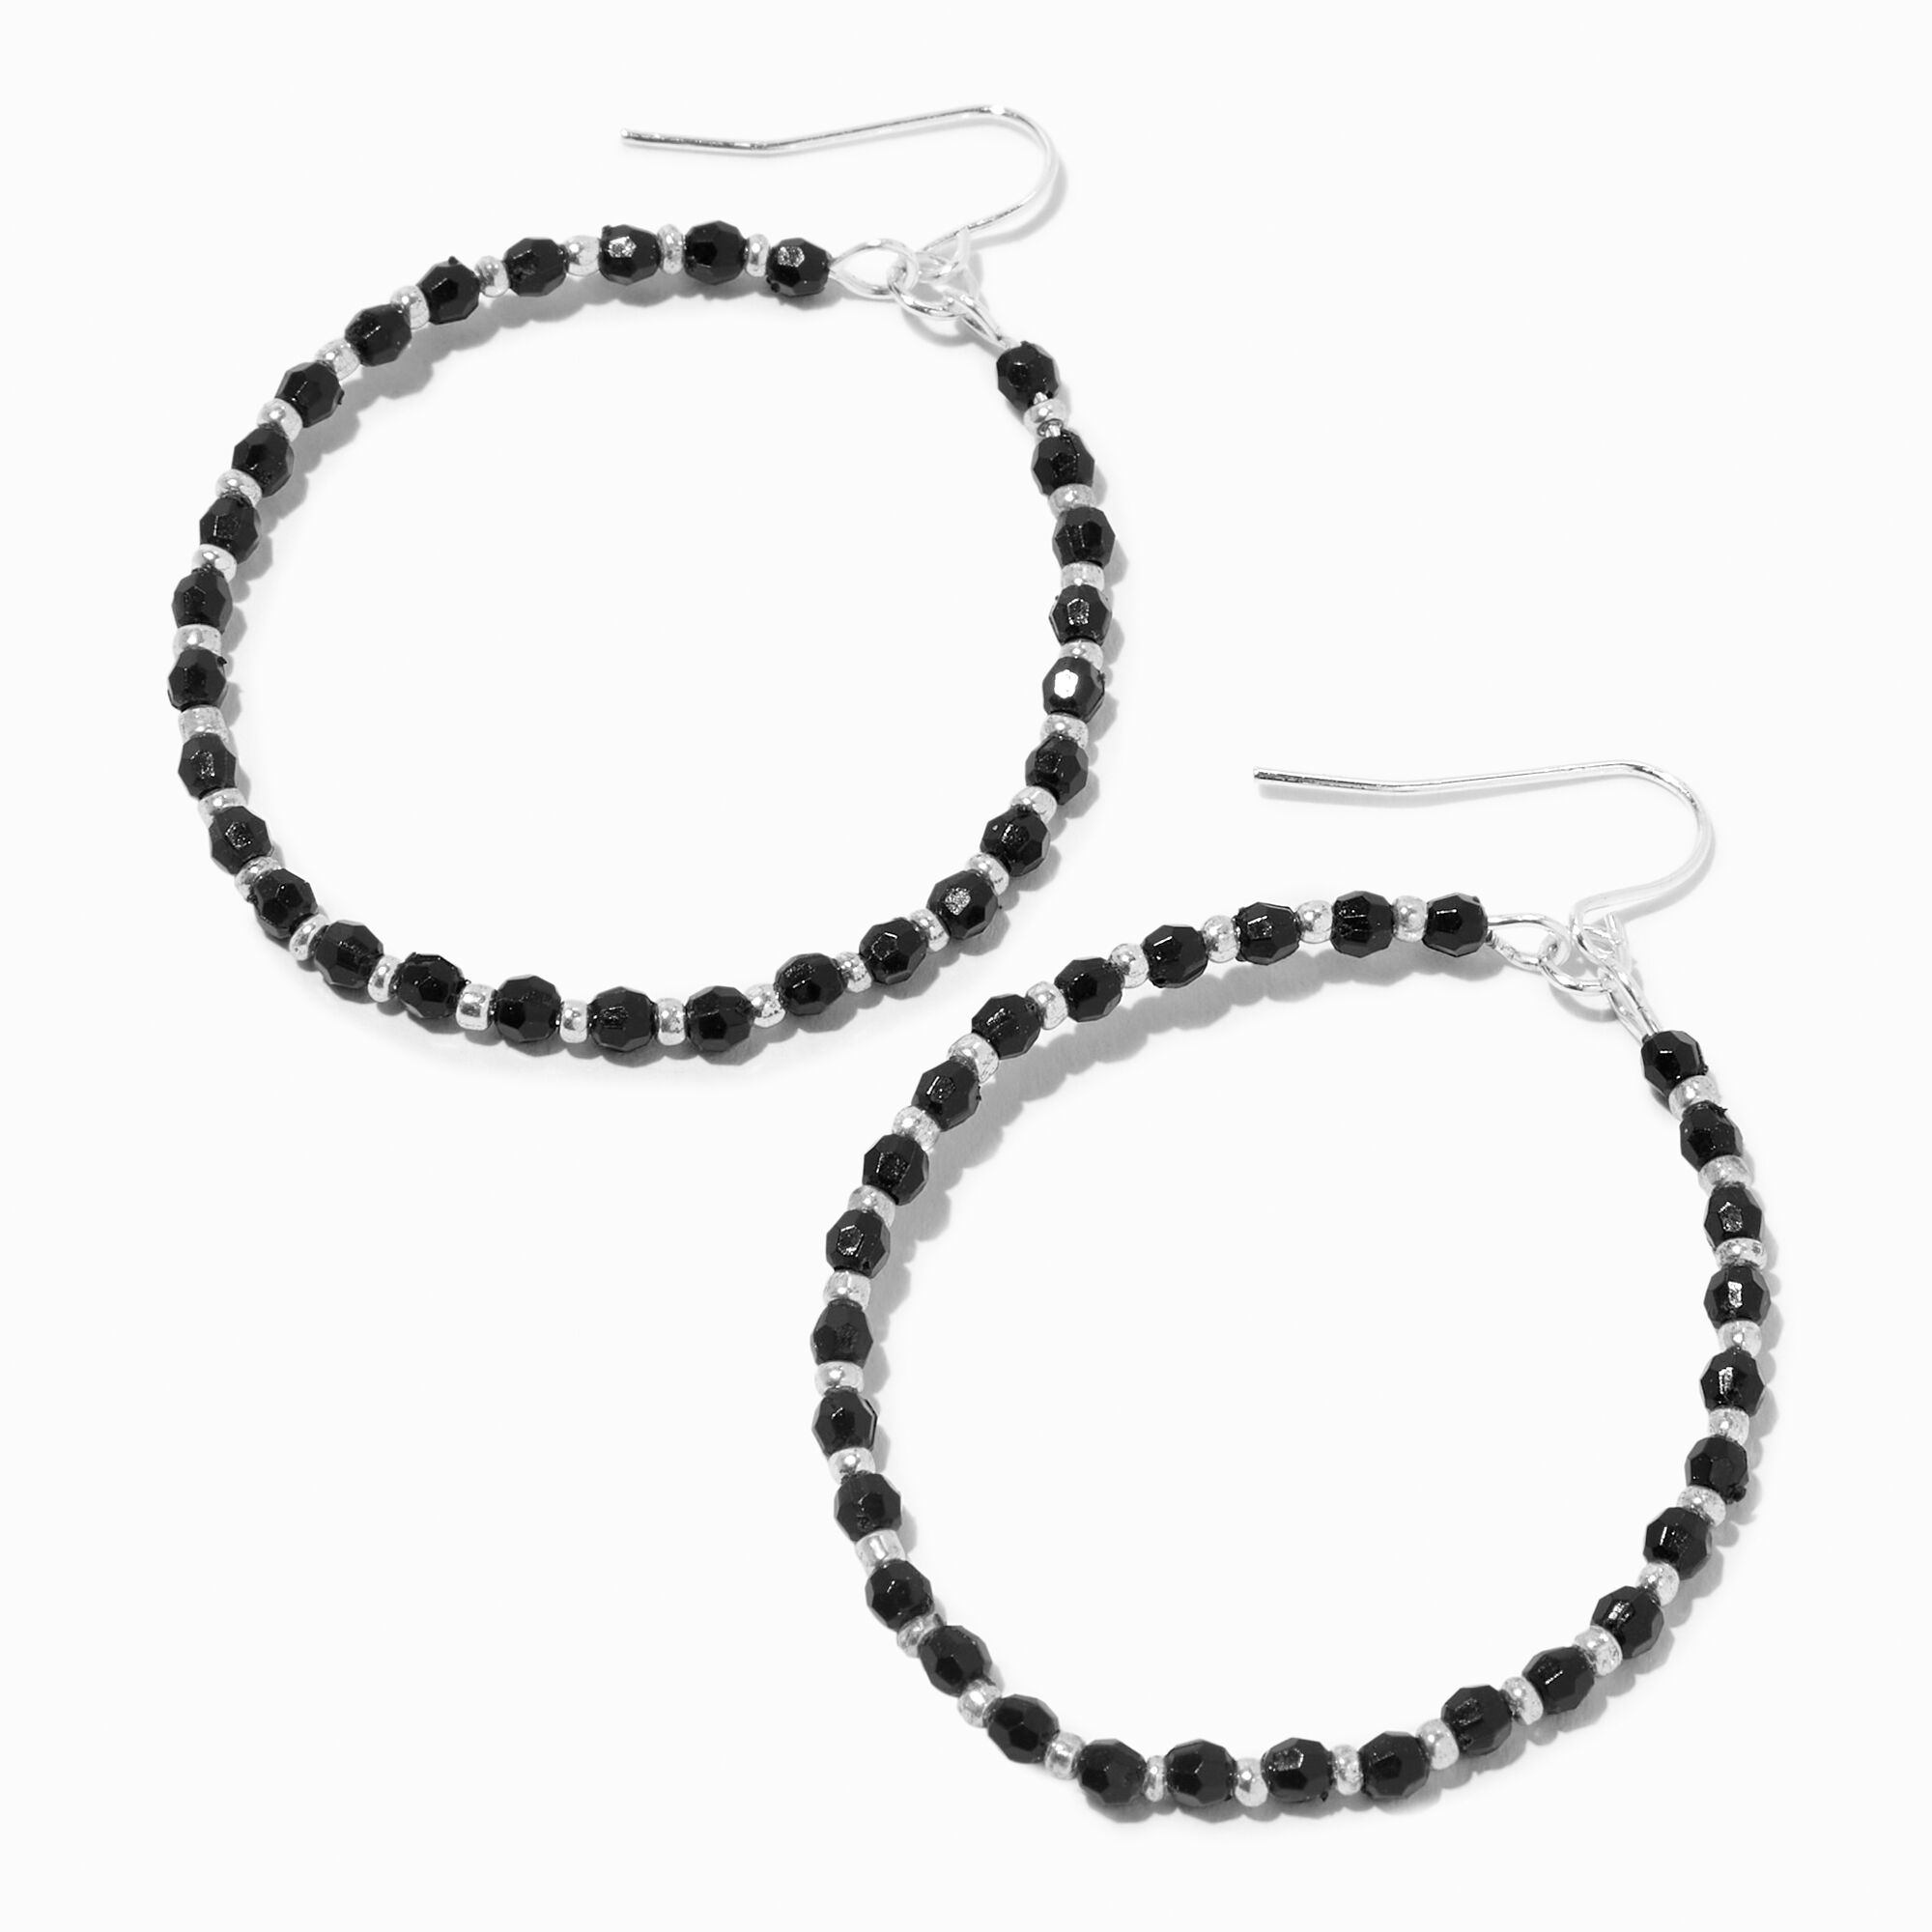 View Claires SilverTone Beads 1 Hoop Drop Earrings Black information